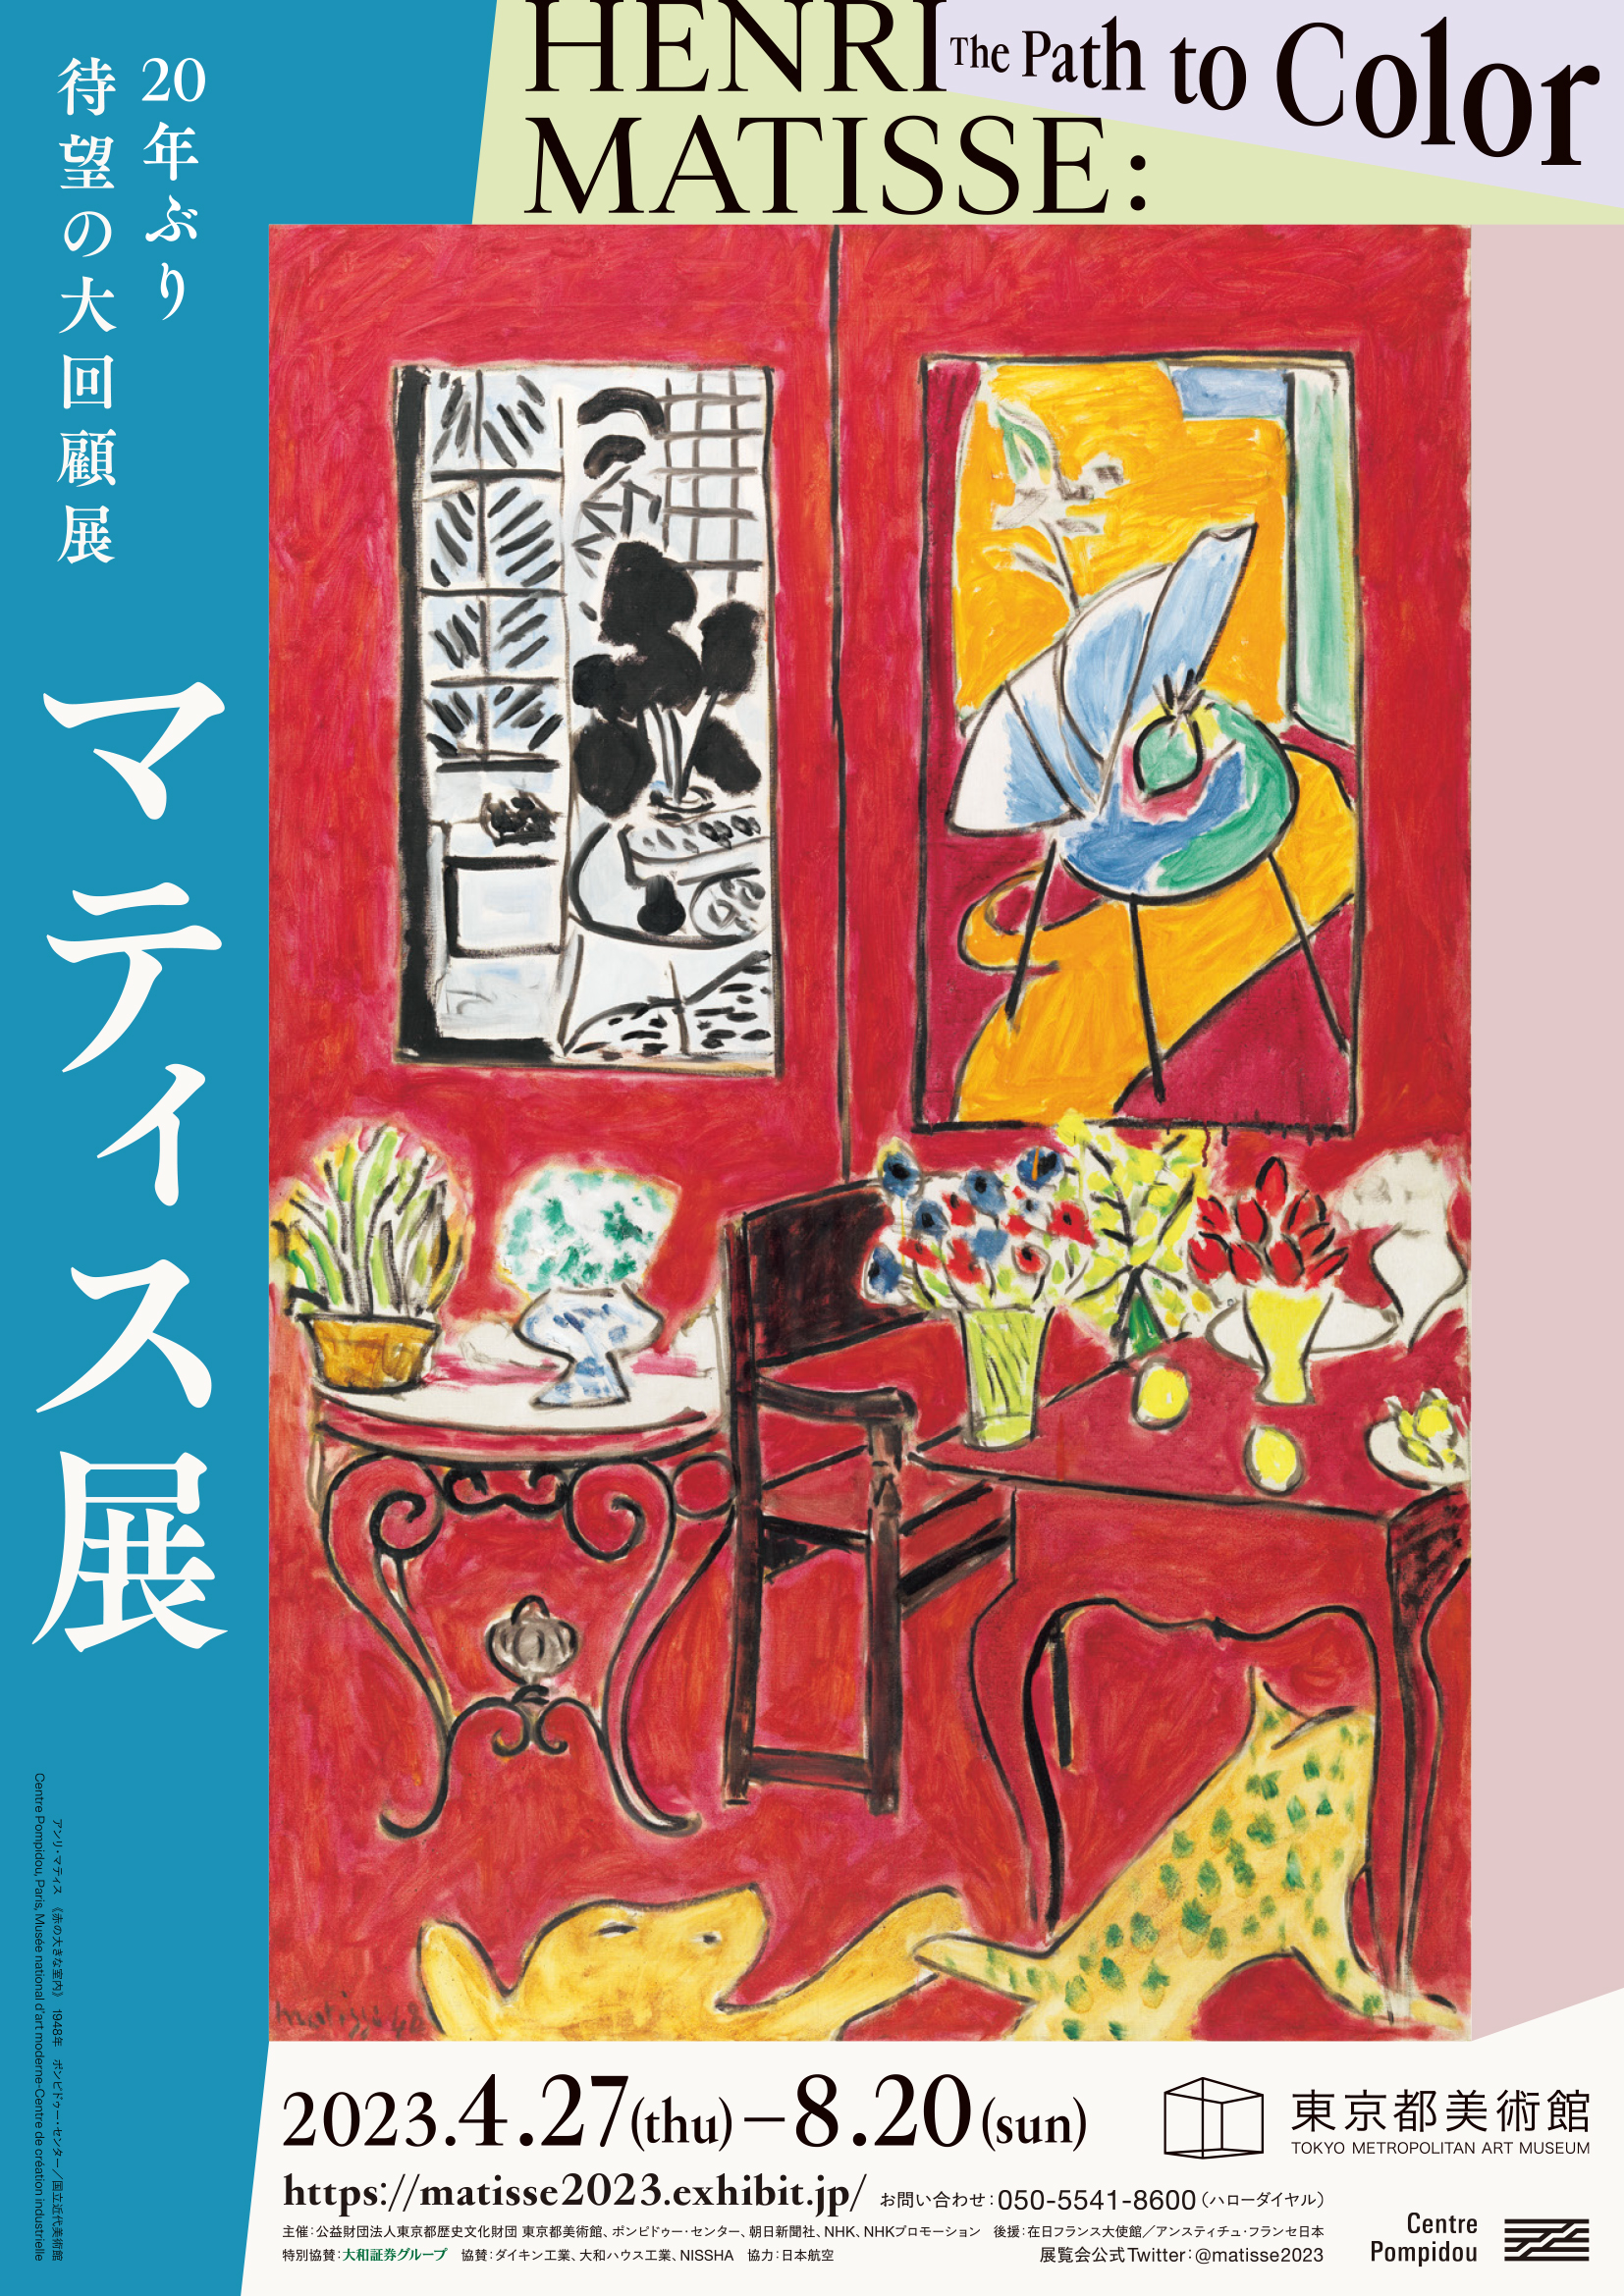 20世紀芸術の巨匠アンリ・マティス約20年ぶりの大回顧展 東京都美術館